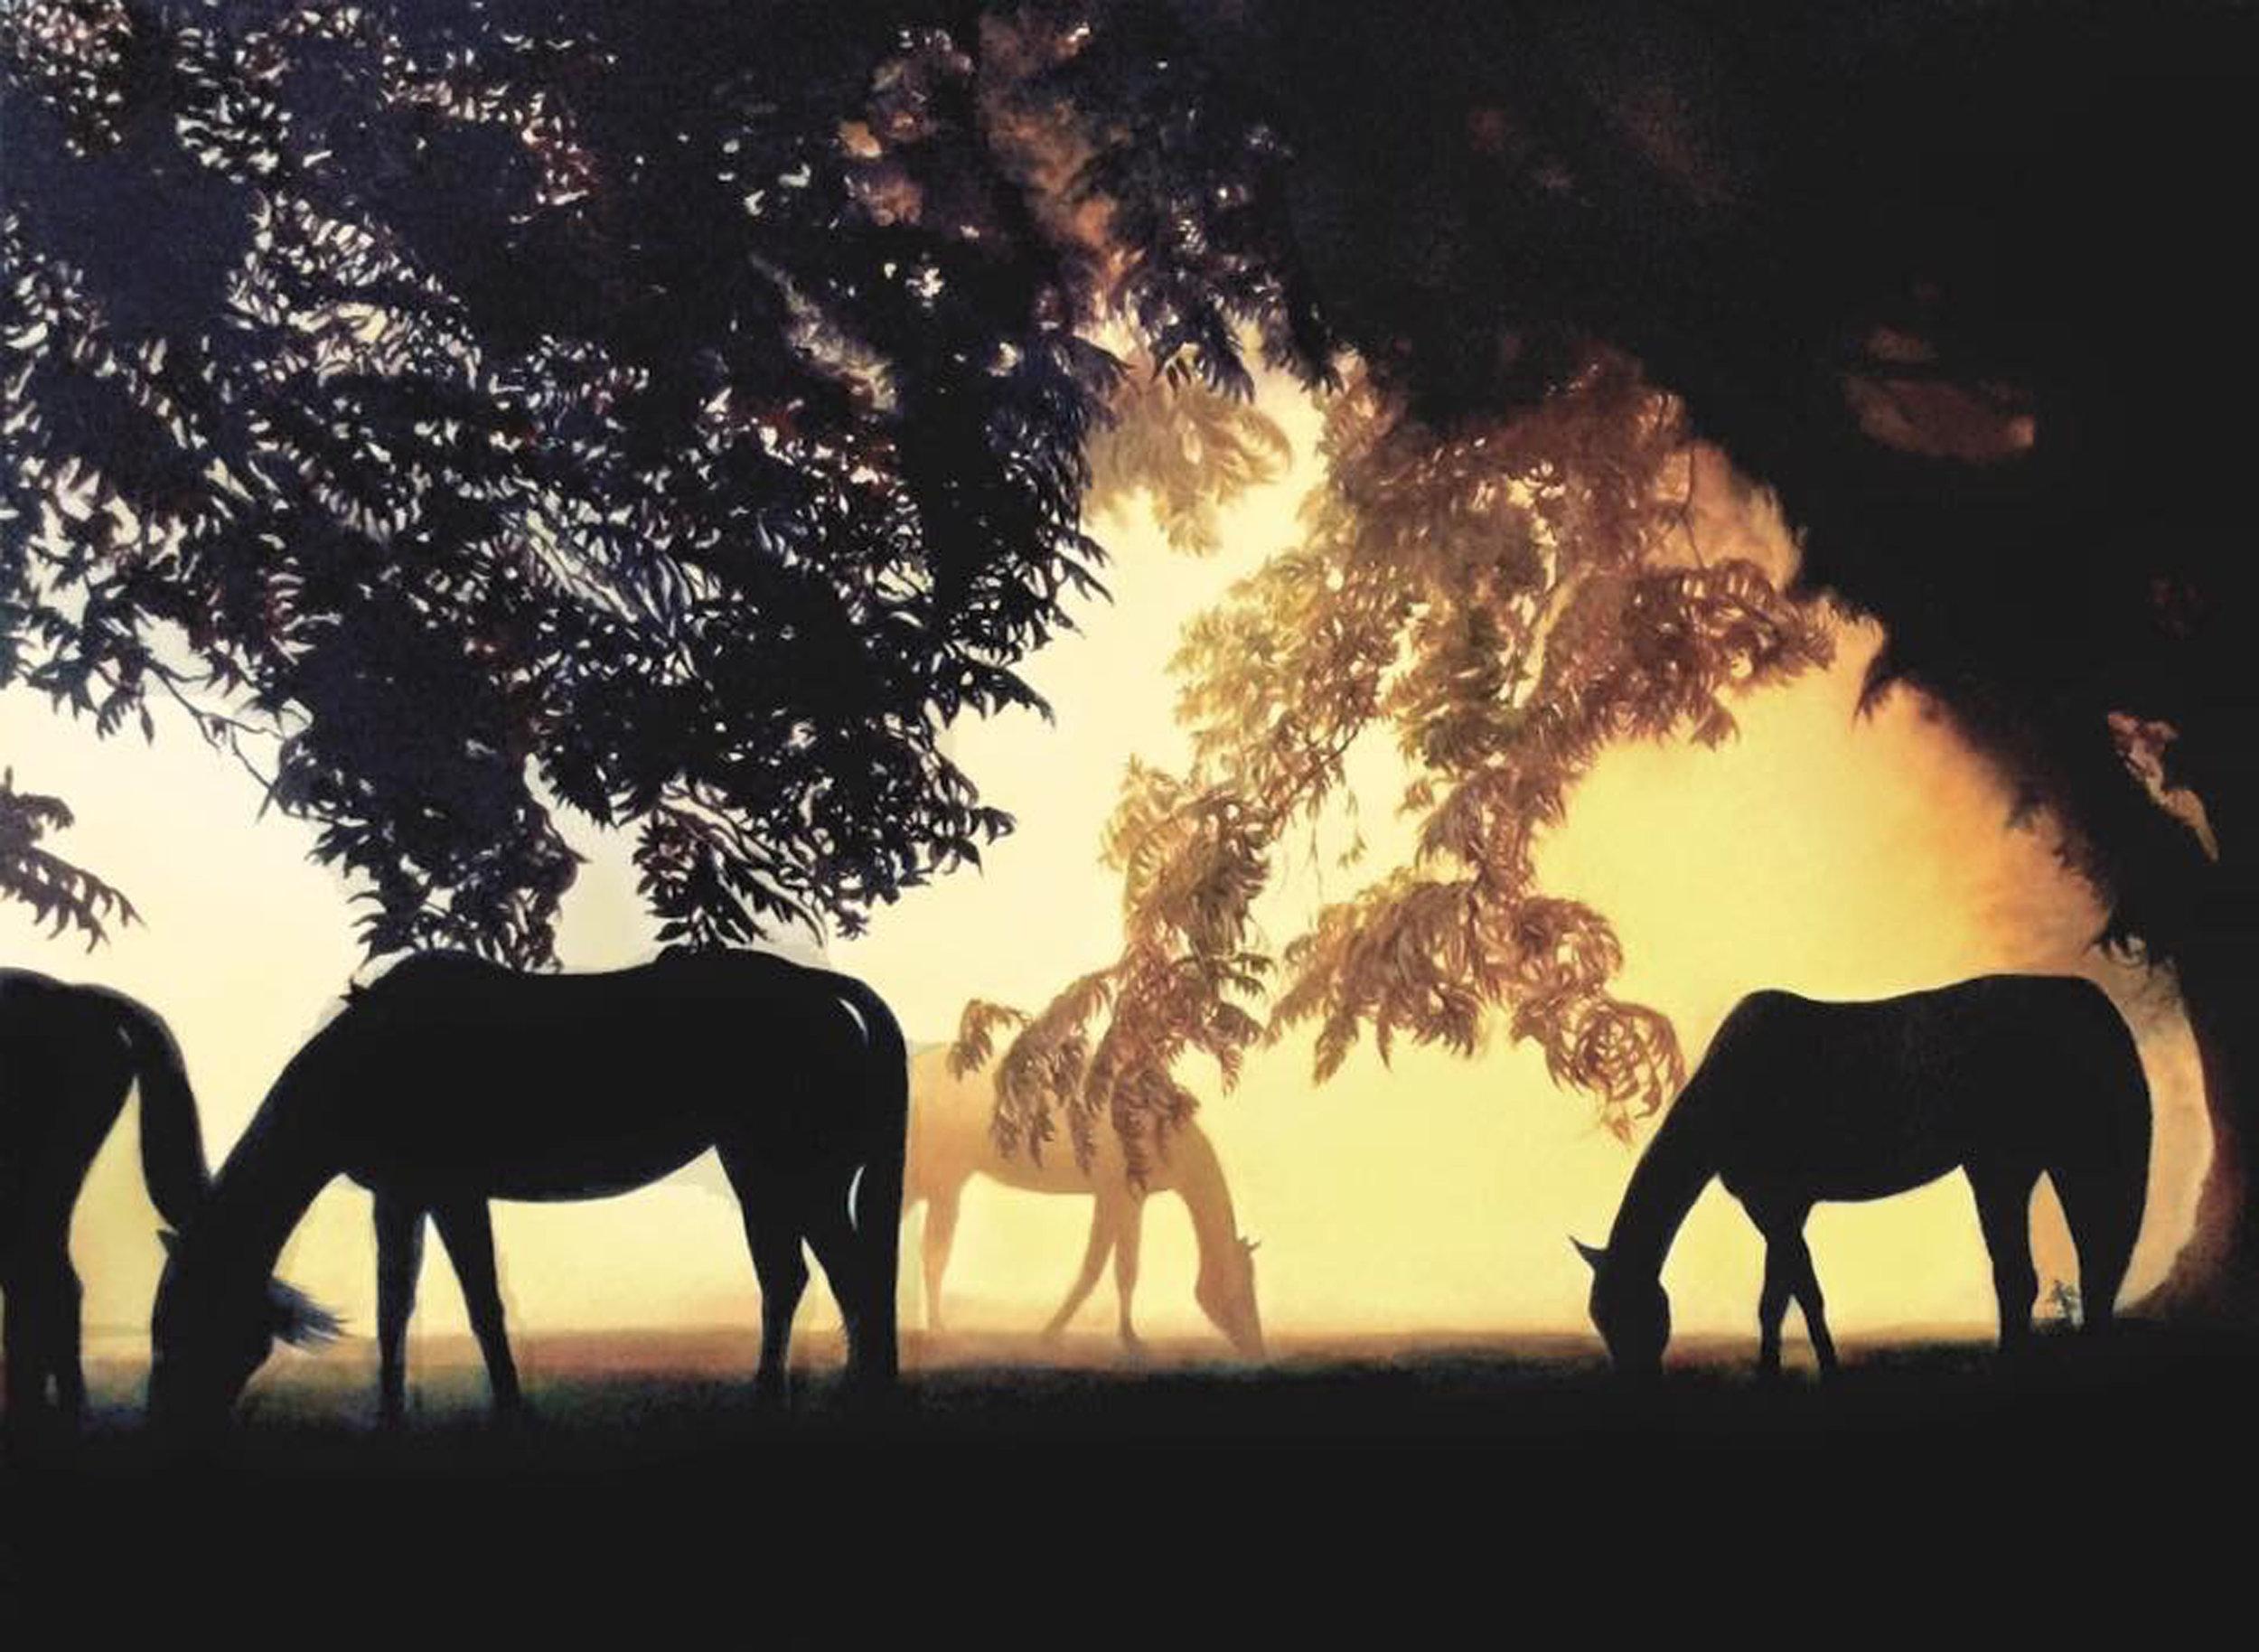 Dieses Werk, "Dawn", ist ein 30x40 großes Ölgemälde auf Leinwand der Künstlerin Marie Channer. Zu sehen ist eine Weide in den frühen Morgenstunden. Pferde grasen in der kühlen Sommerluft, ihre Silhouetten zeichnen sich in der Sonne ab. Warme Töne